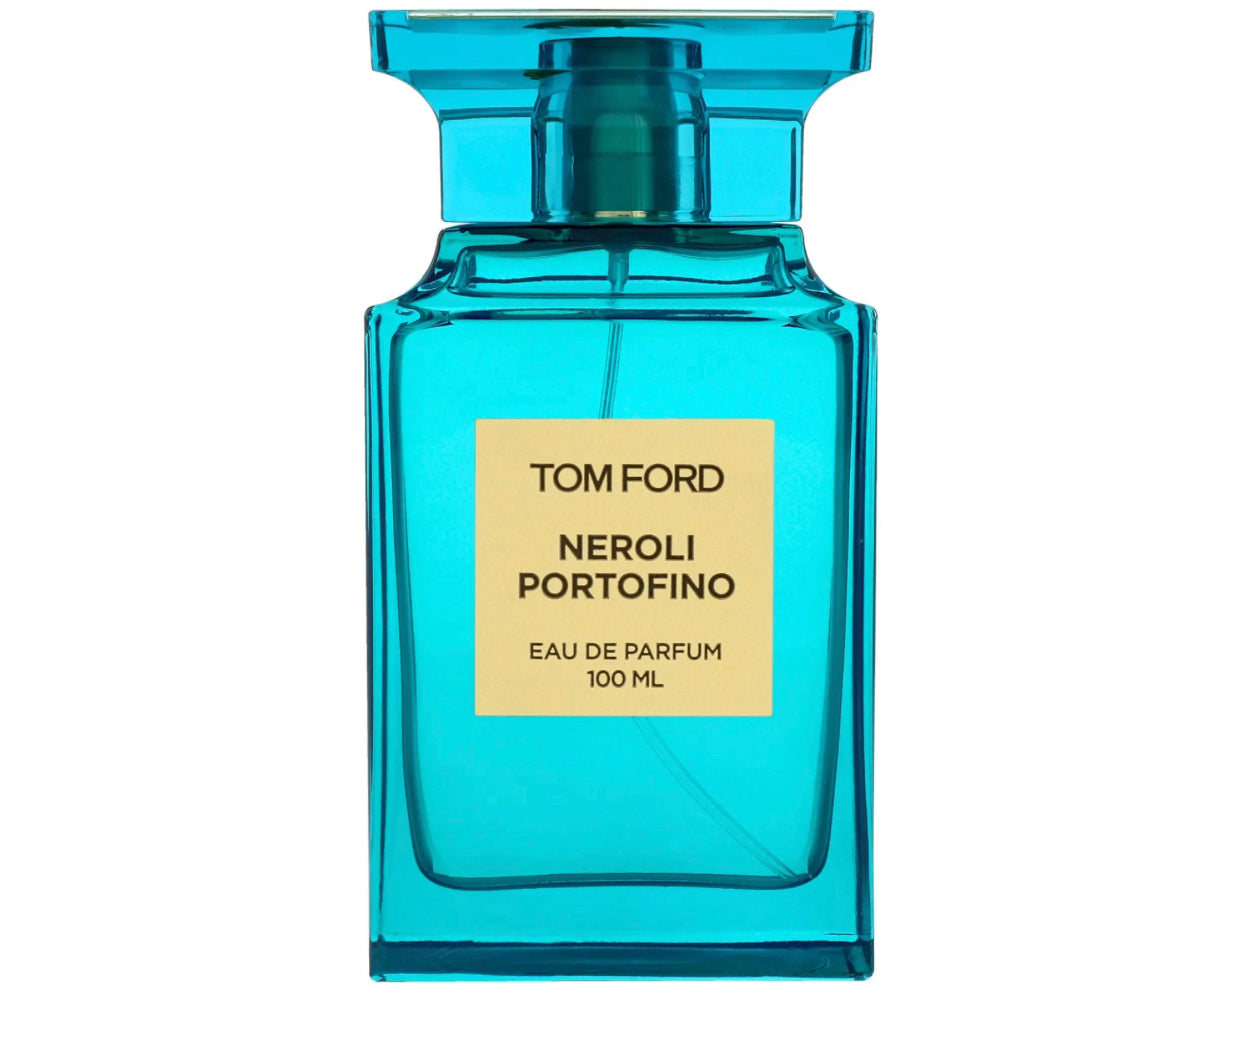 Tom Ford Private Blend Neroli Portofino EDP Eau De Parfum Samples